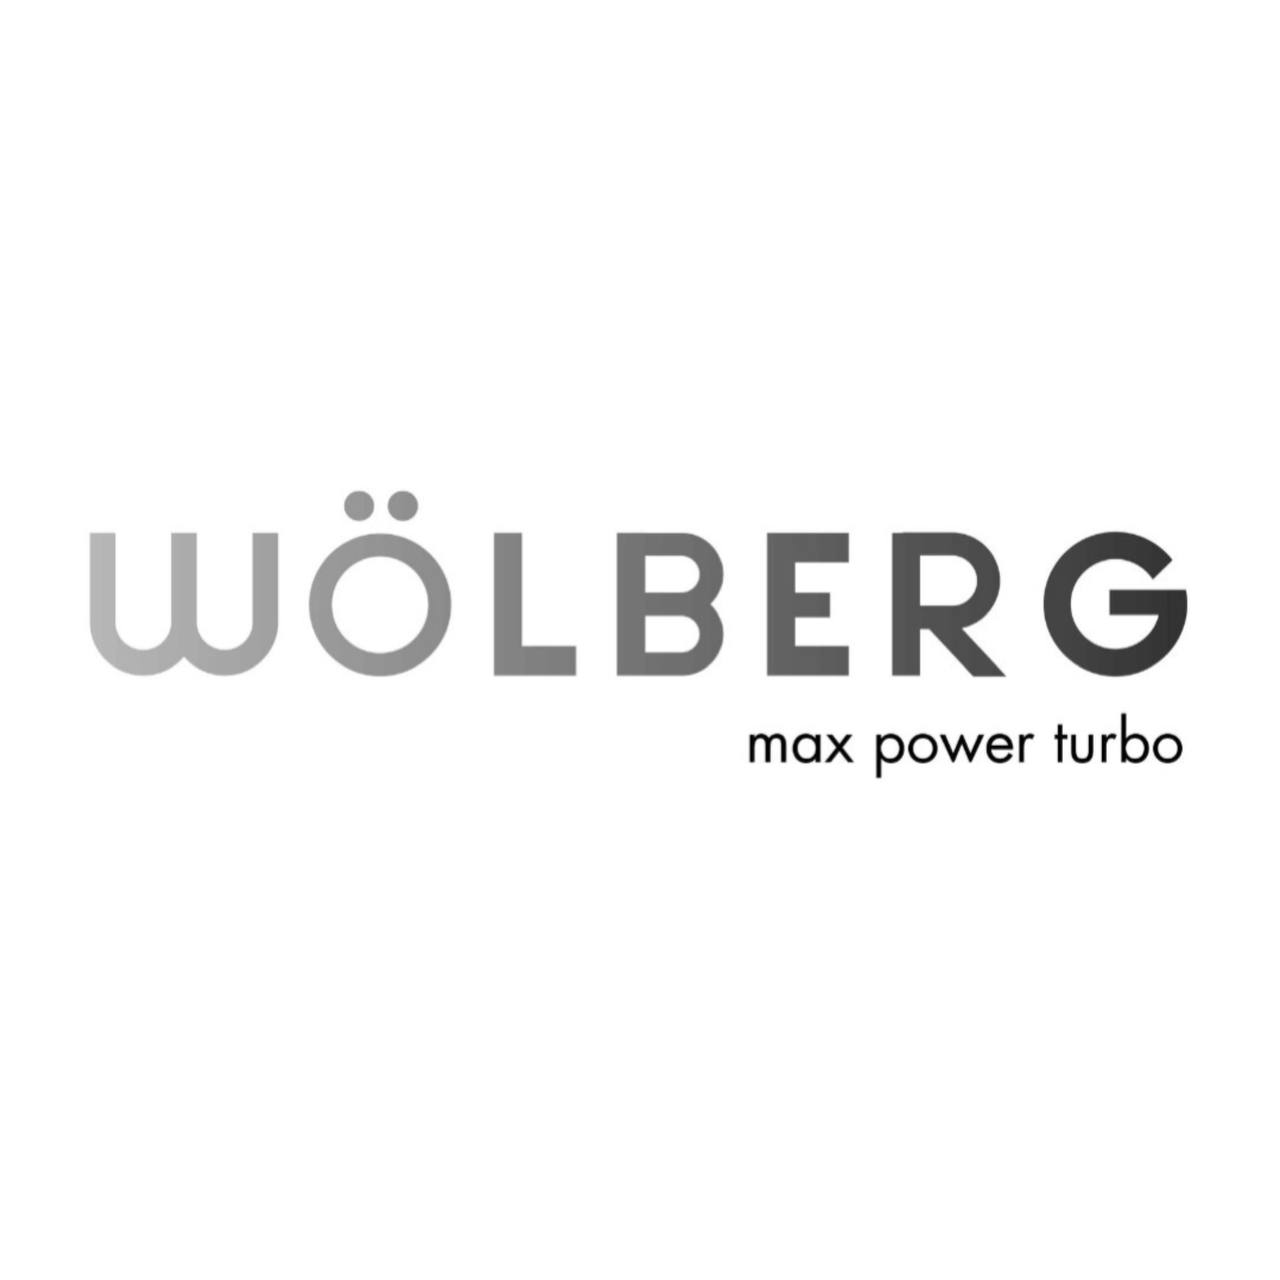 Wolberg (3)